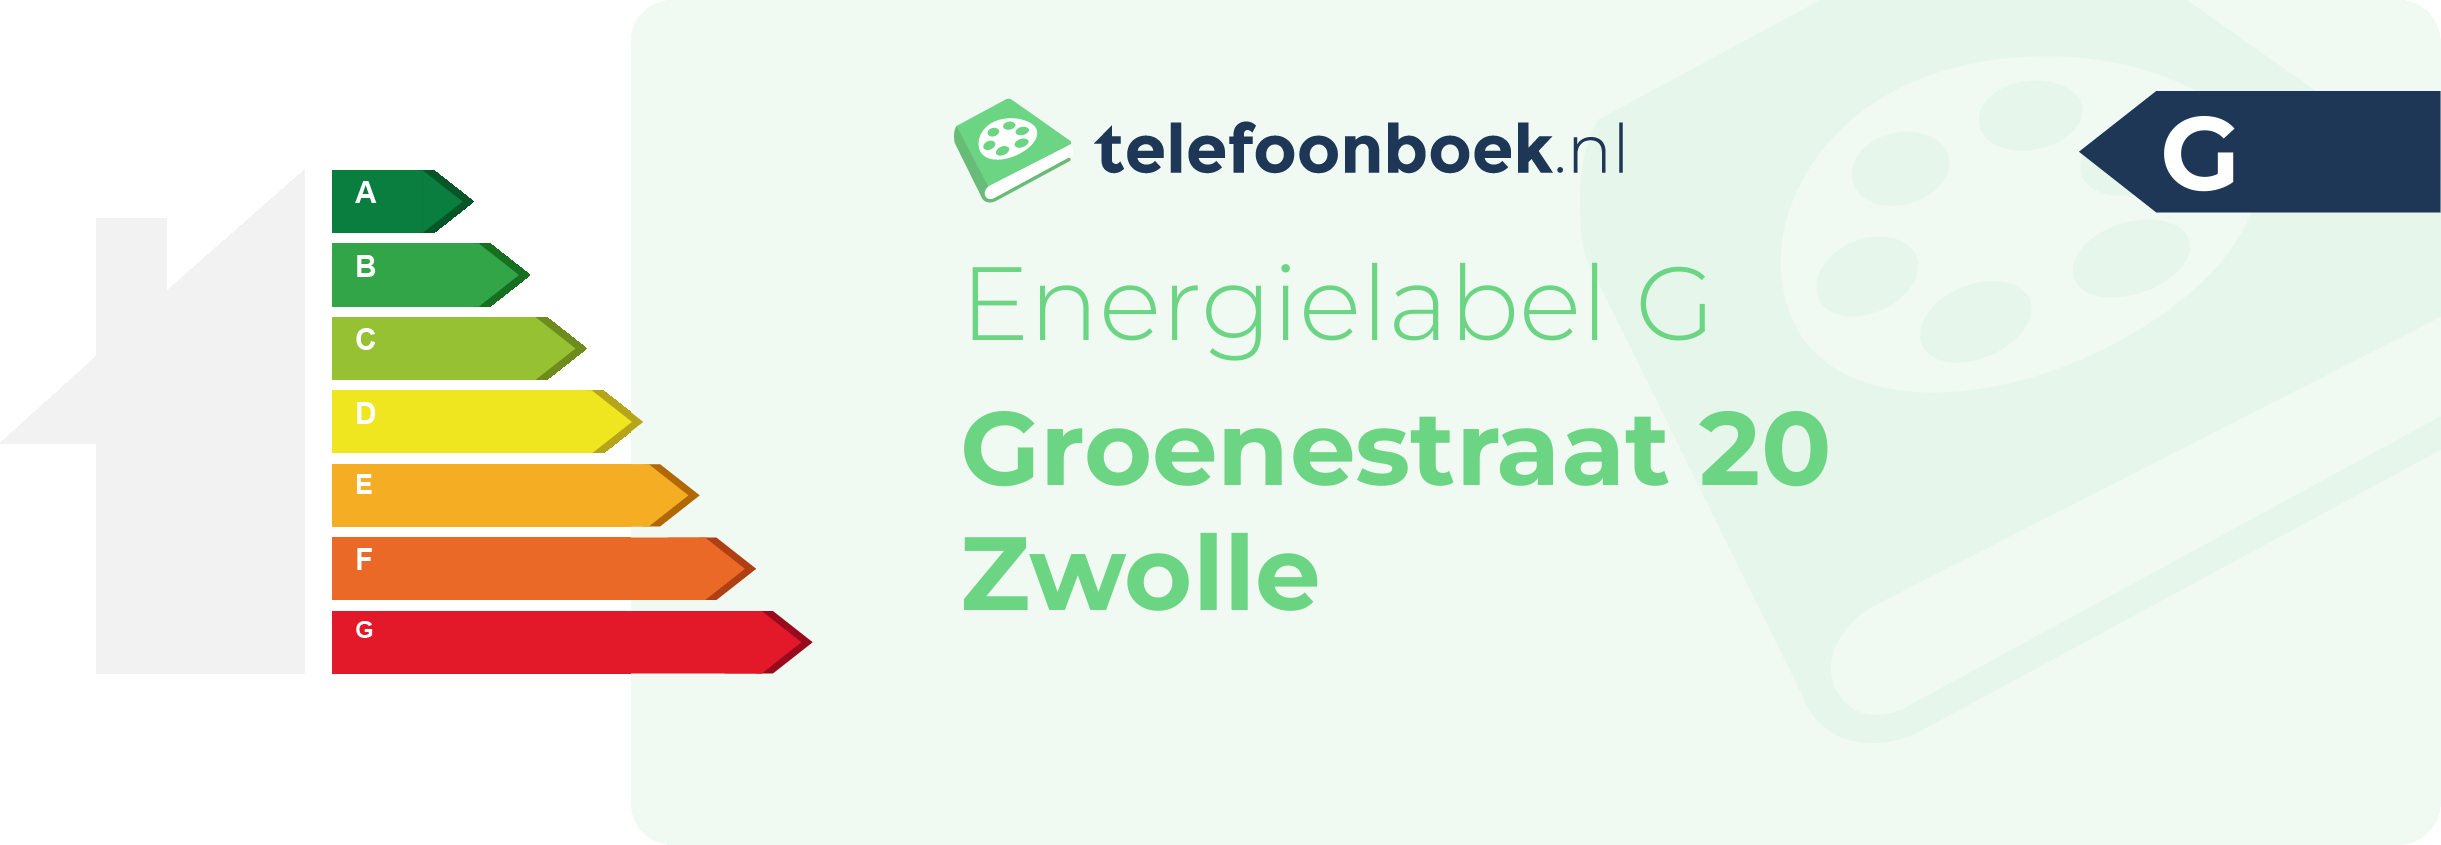 Energielabel Groenestraat 20 Zwolle